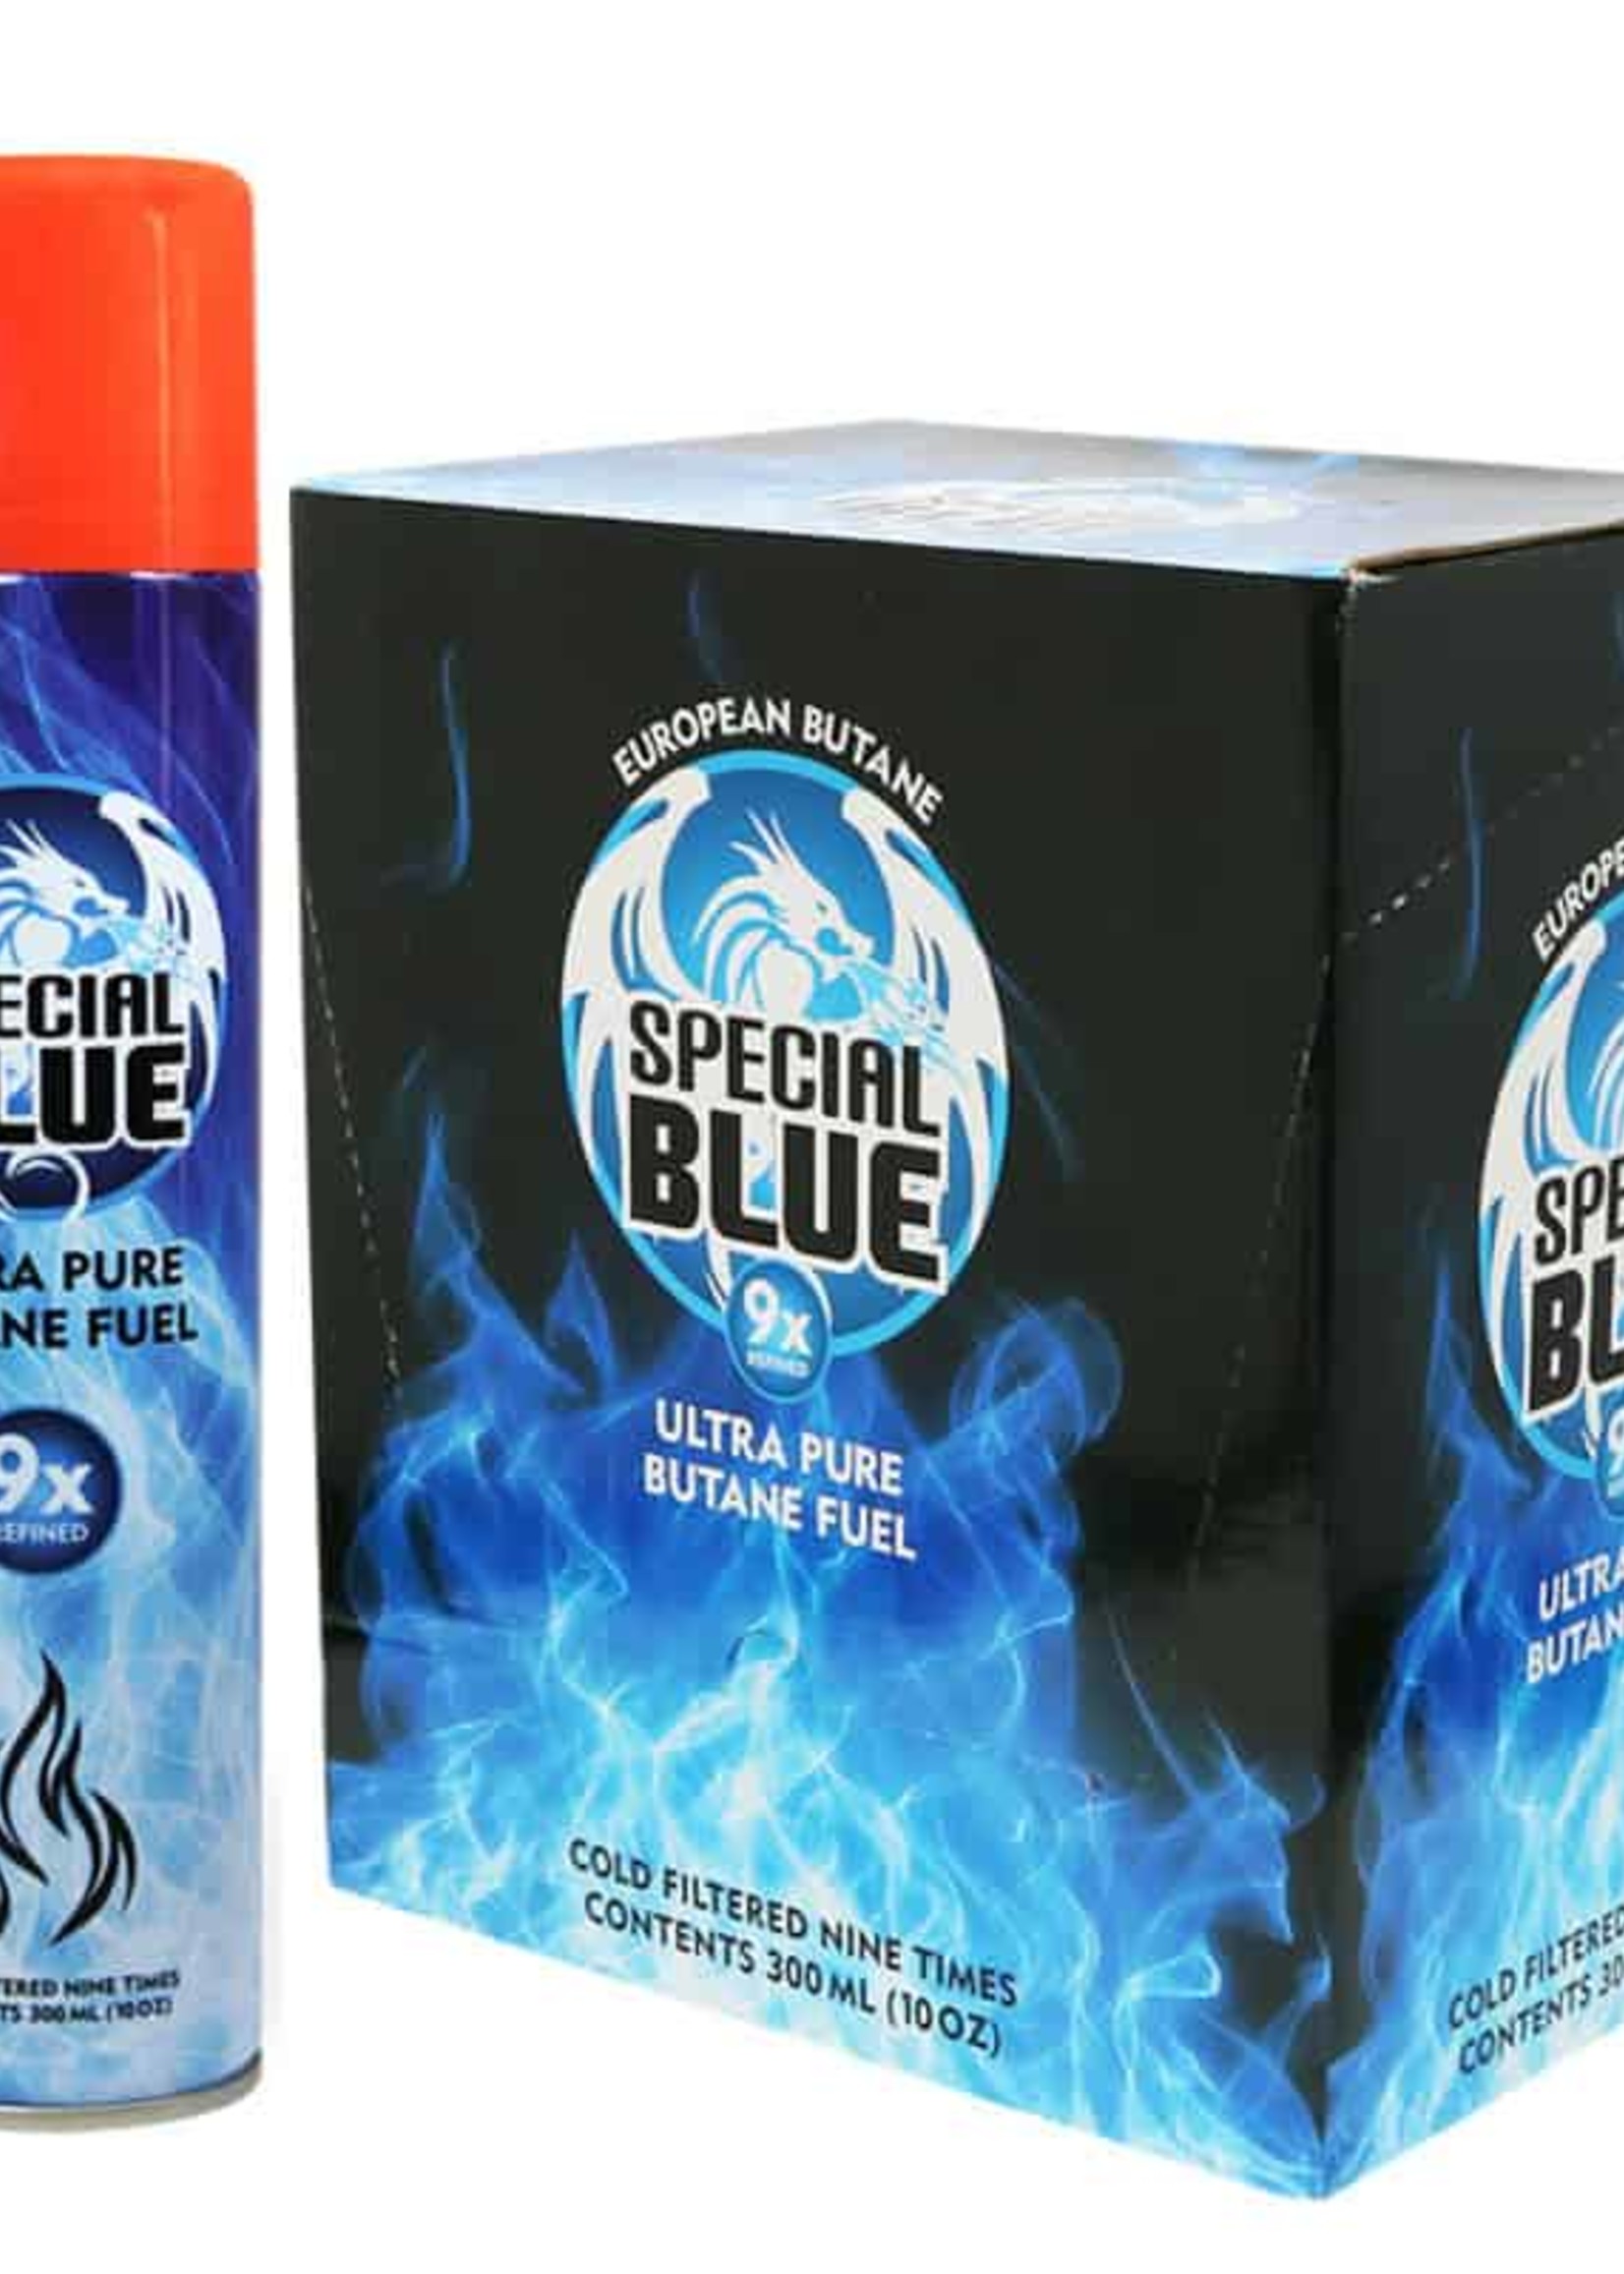 Special Blue Special Blue 9x Butane